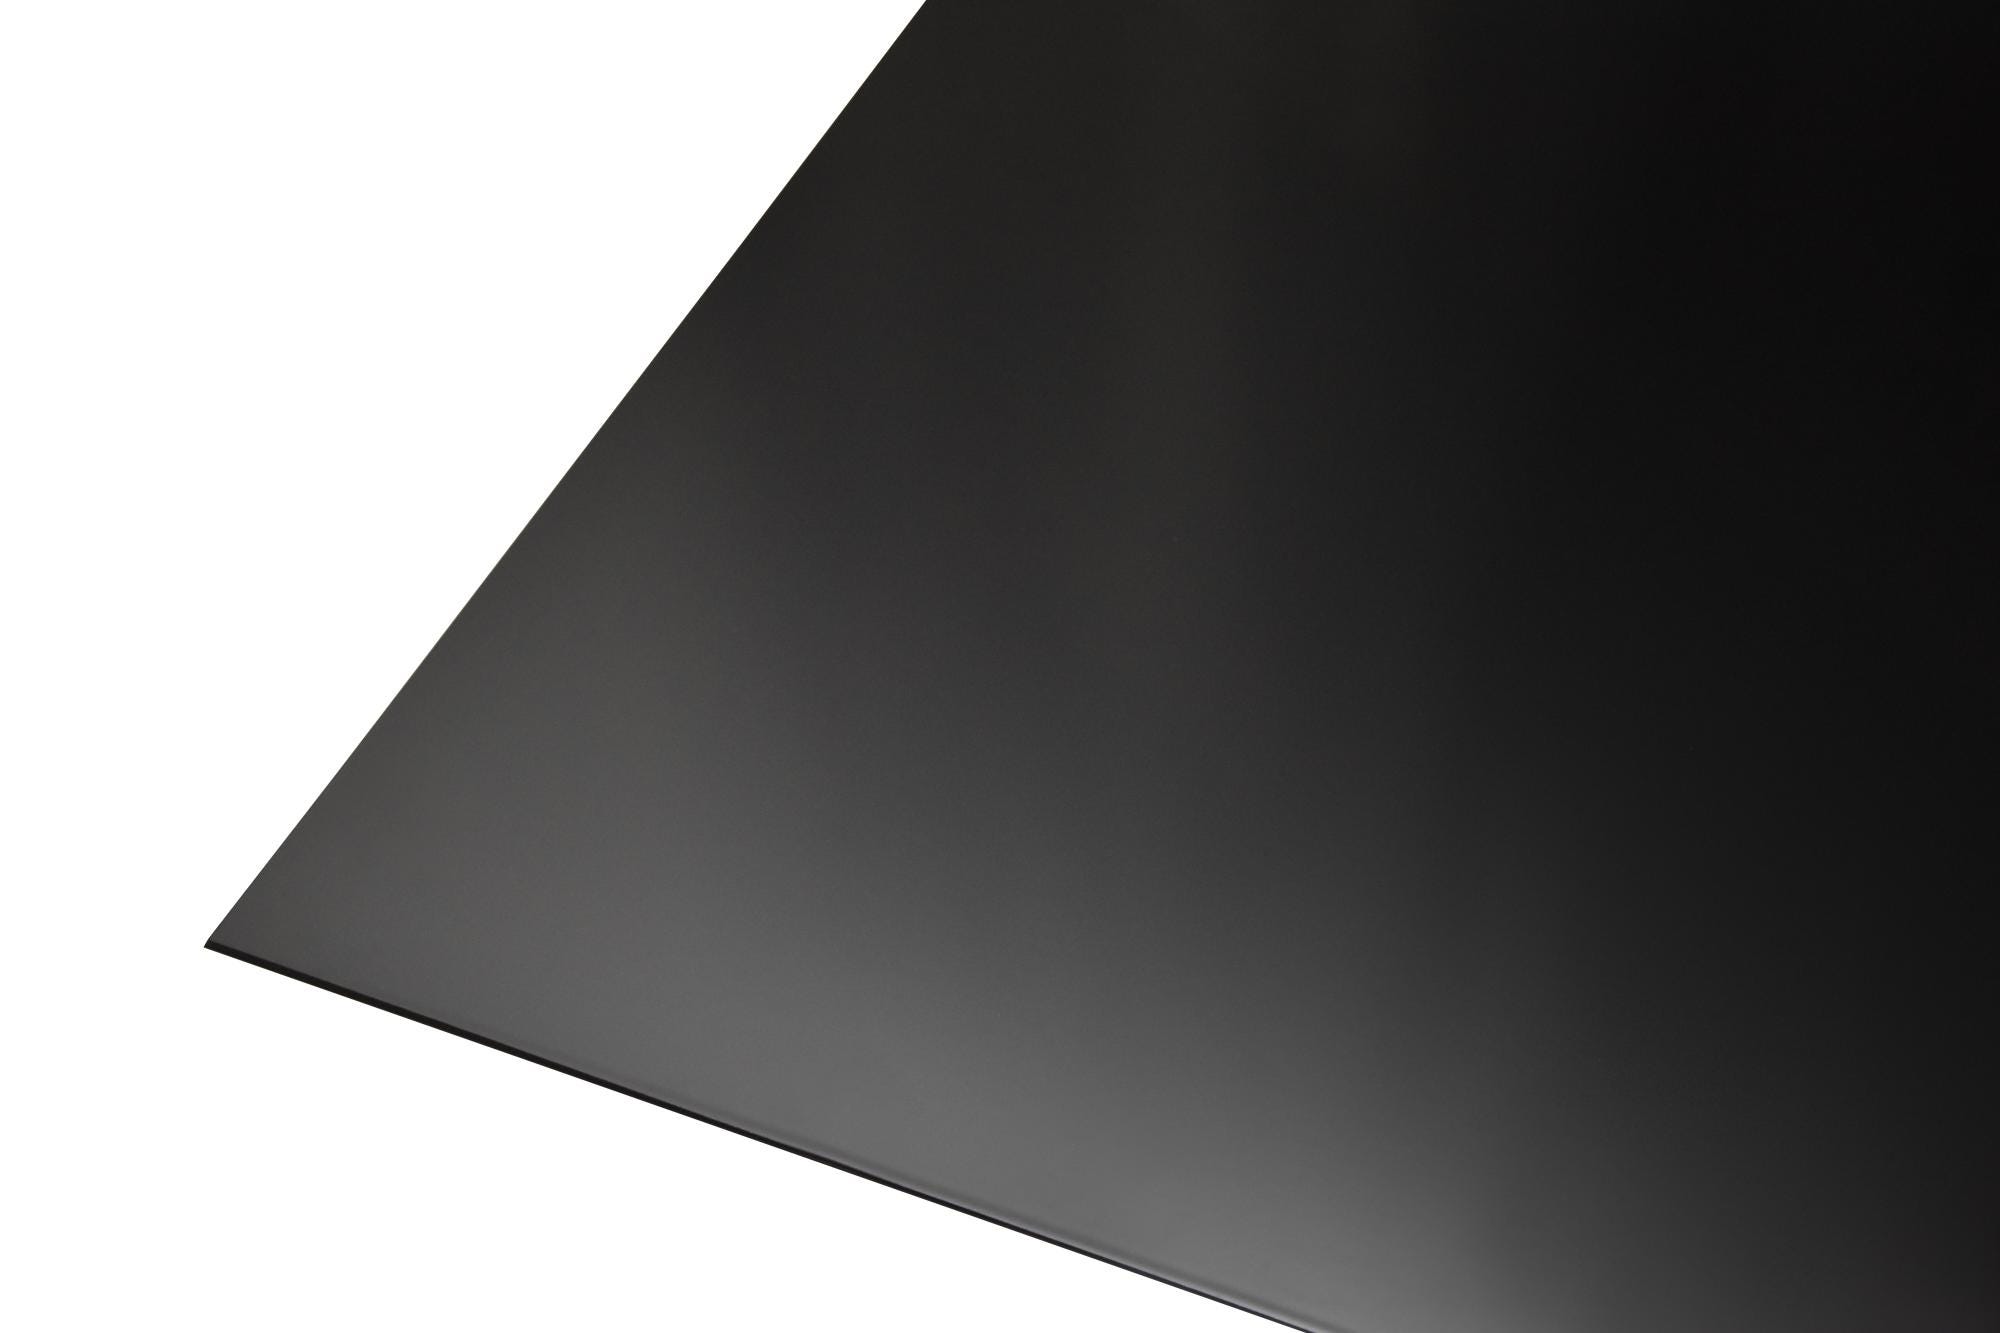 Tôle aluminium lisse peint noir L.1000 x l.600 mm, Ep.0.8 mm